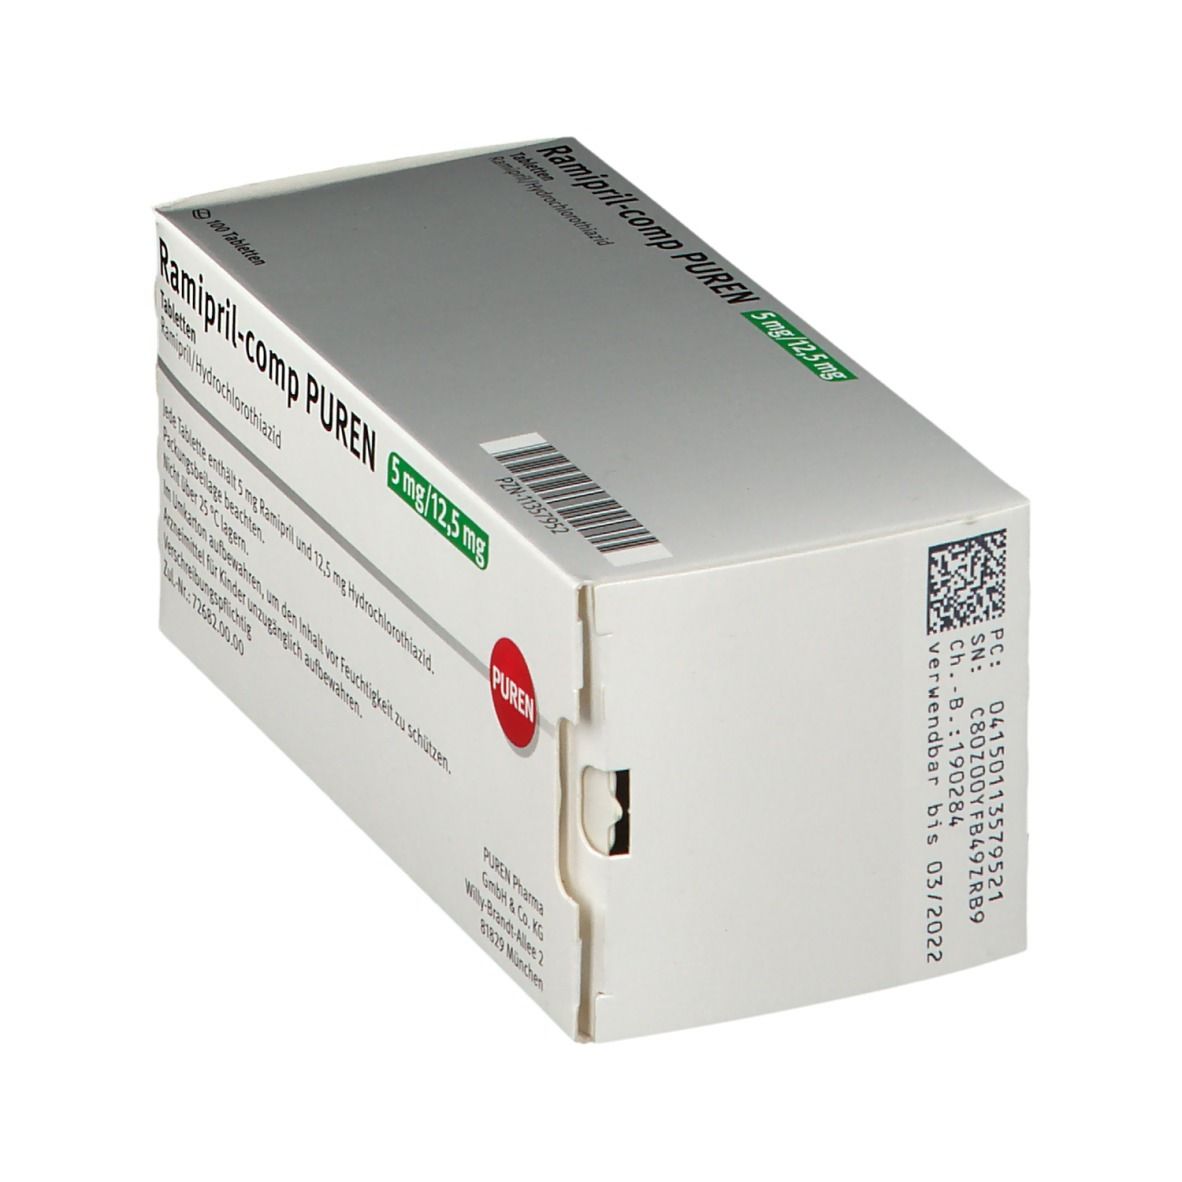 Ramipril-comp PUREN 5 mg/12,5 mg